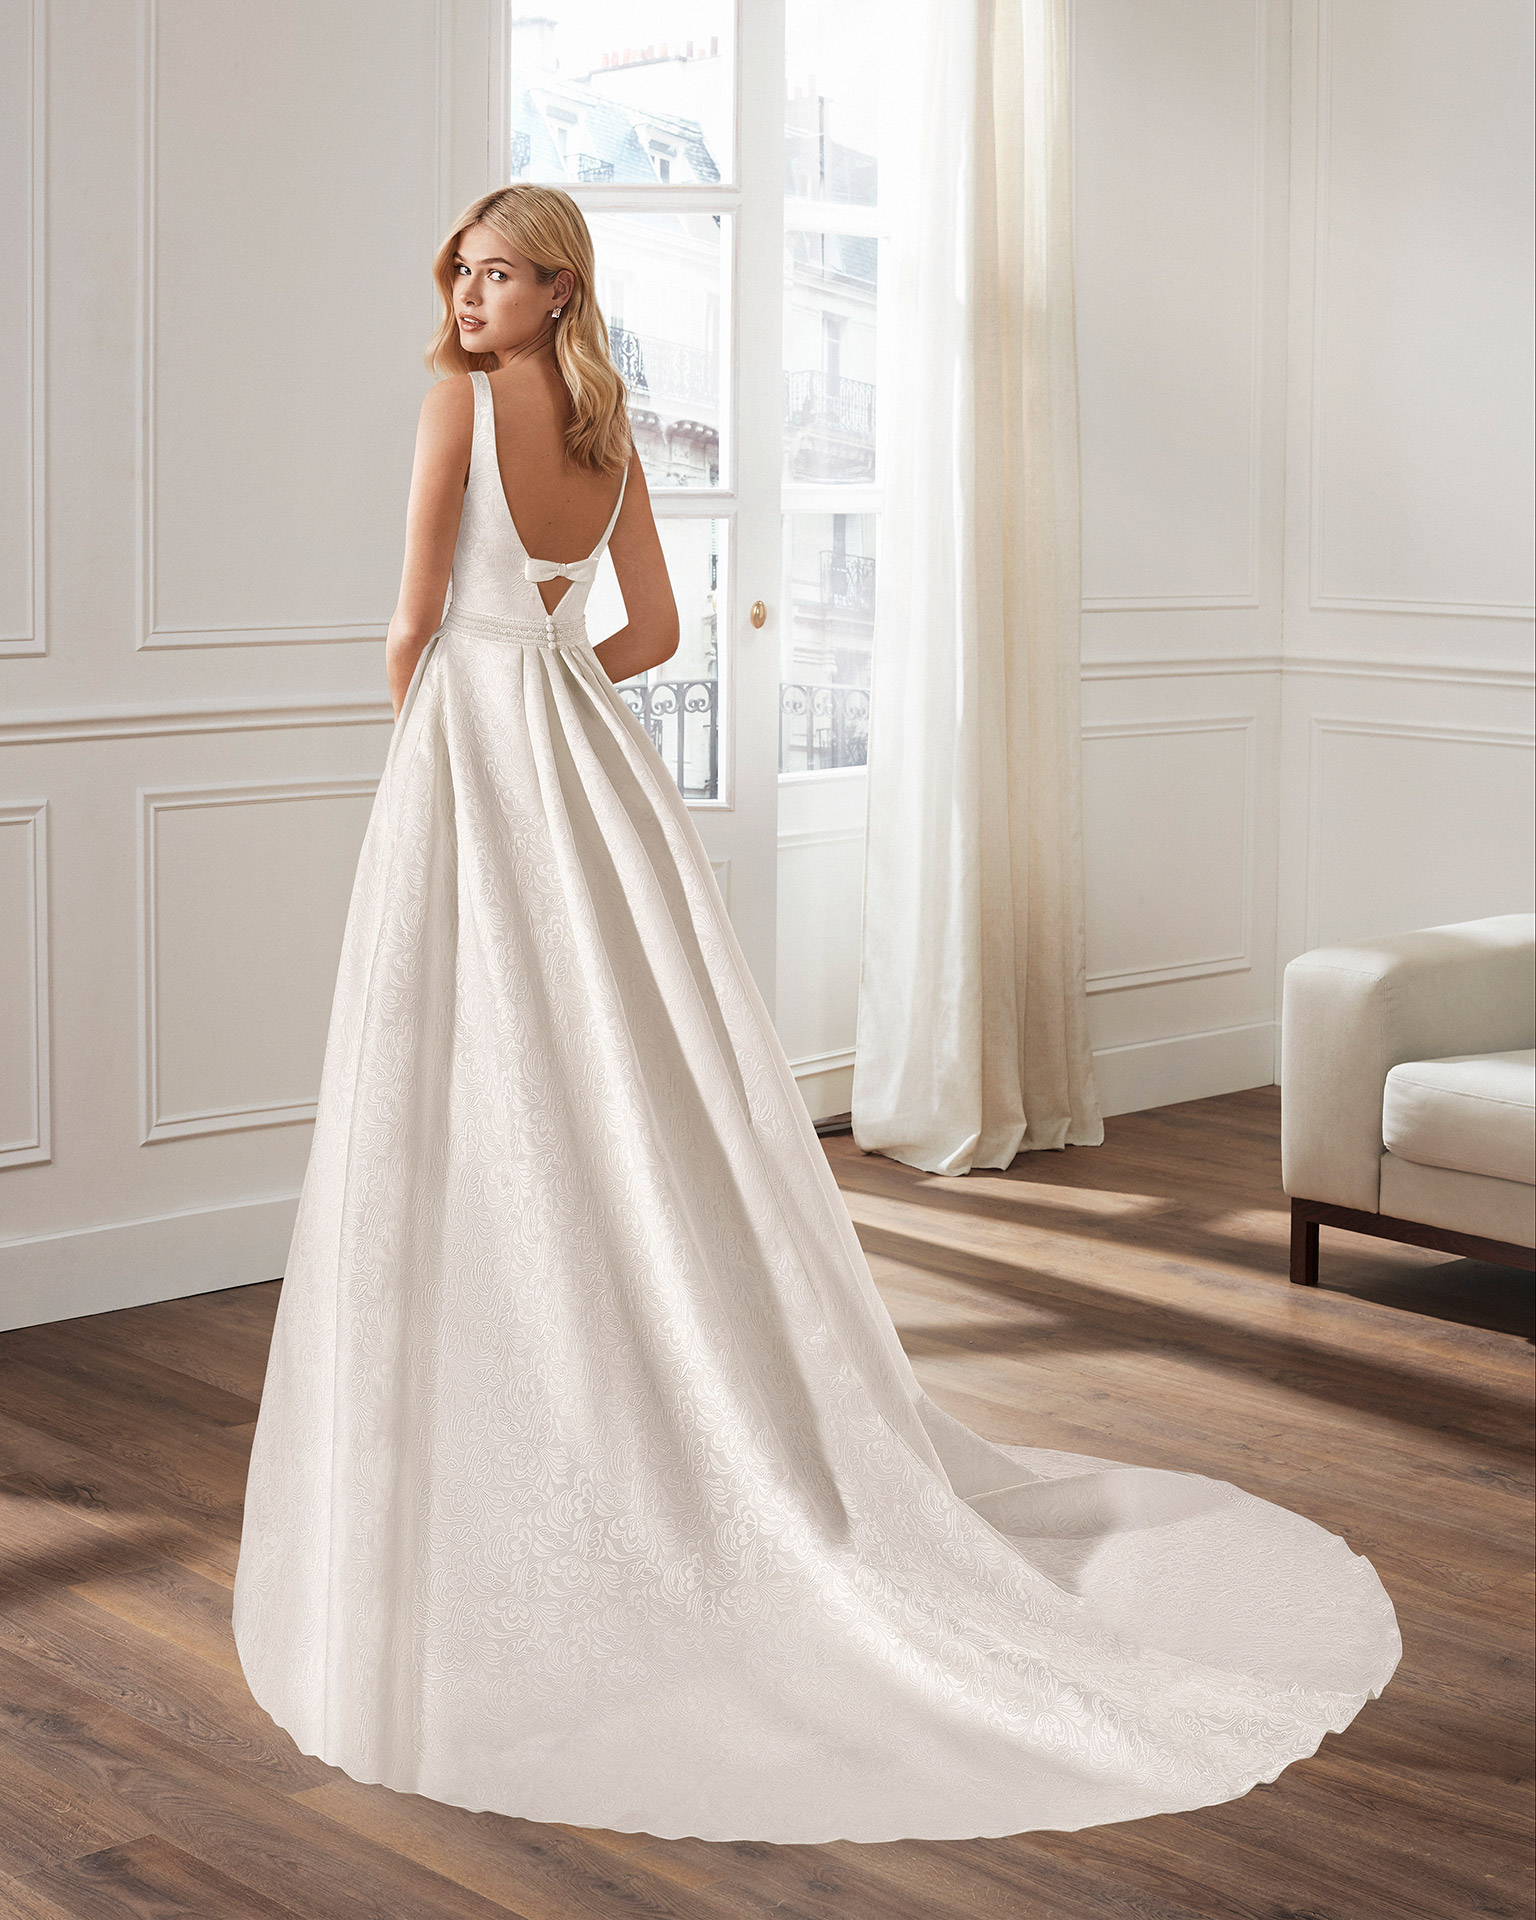 Vestido de novia corte clásico línea A, en brocado con escote pico en delantero y espalda. Colección  2020.